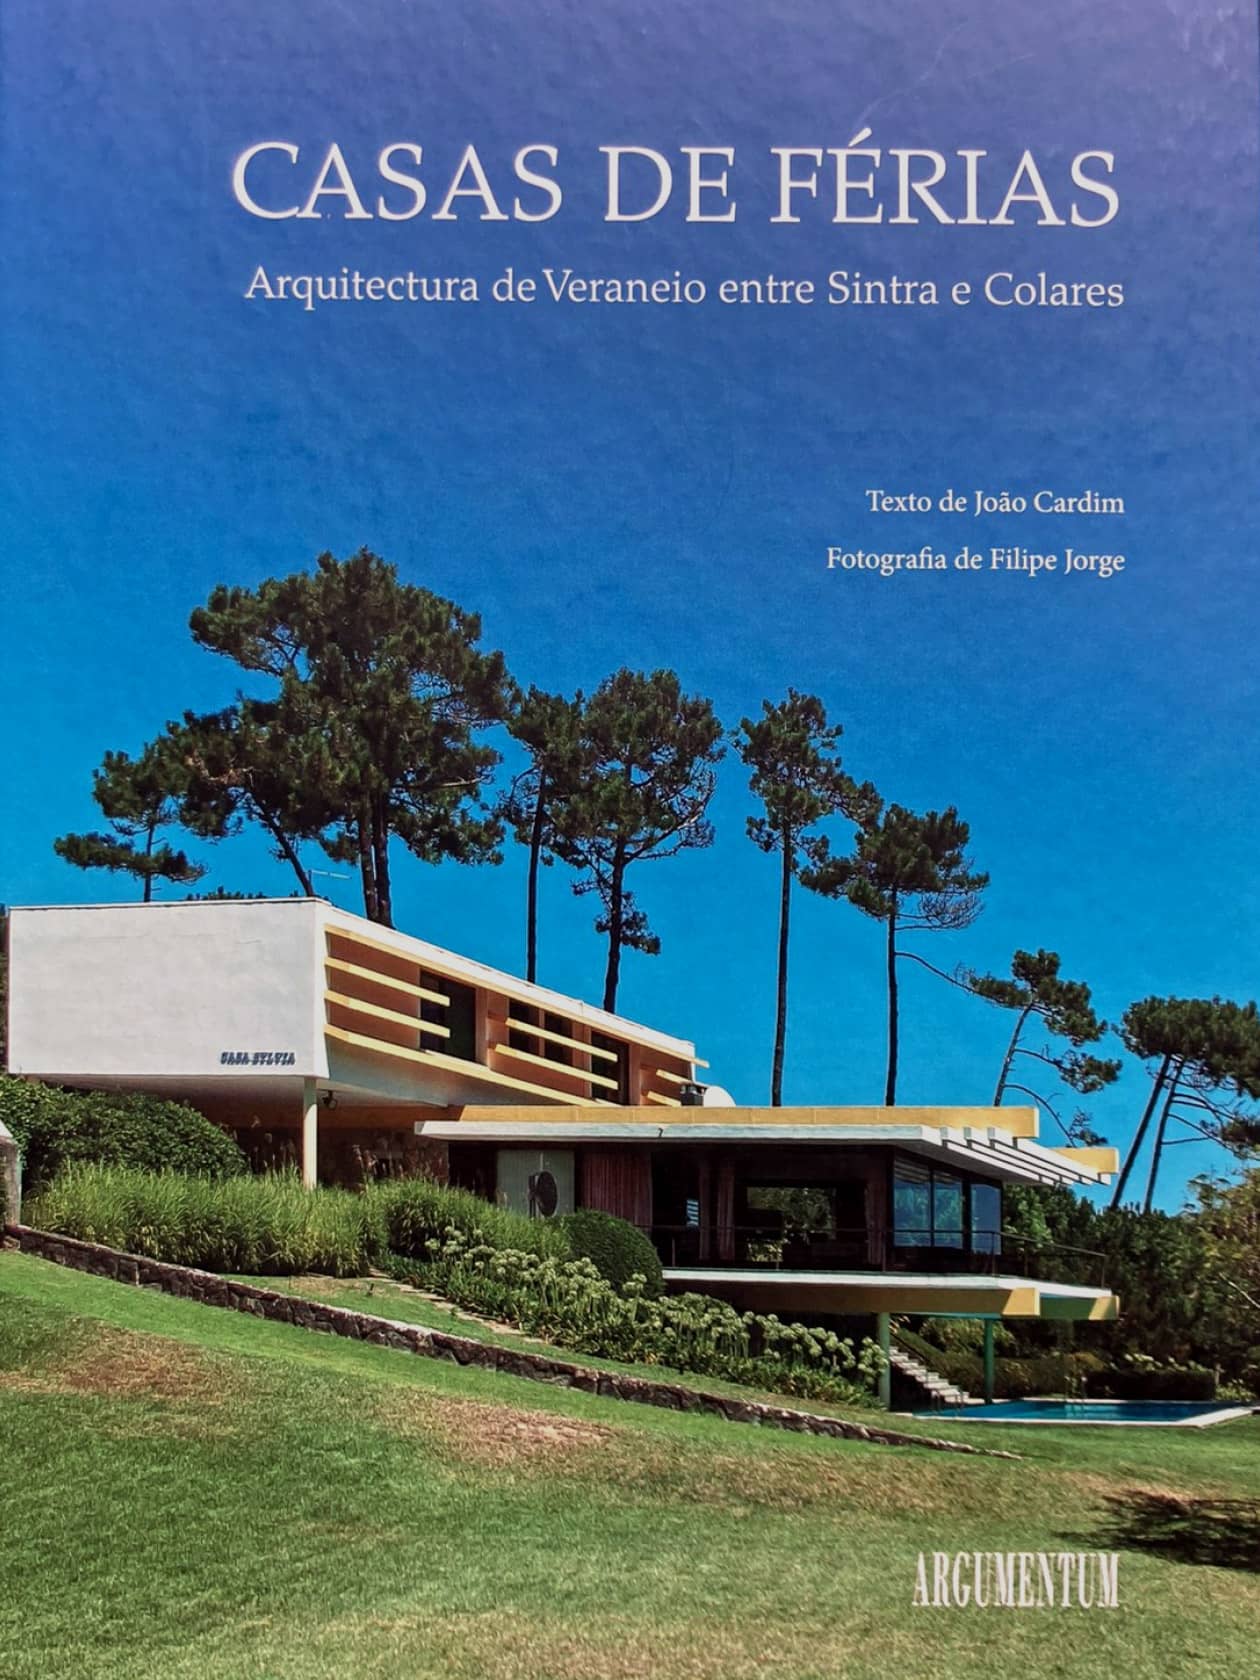 Sommerhäuser zwischen Sintra und Colares | Verlag Argumentum, Portugal